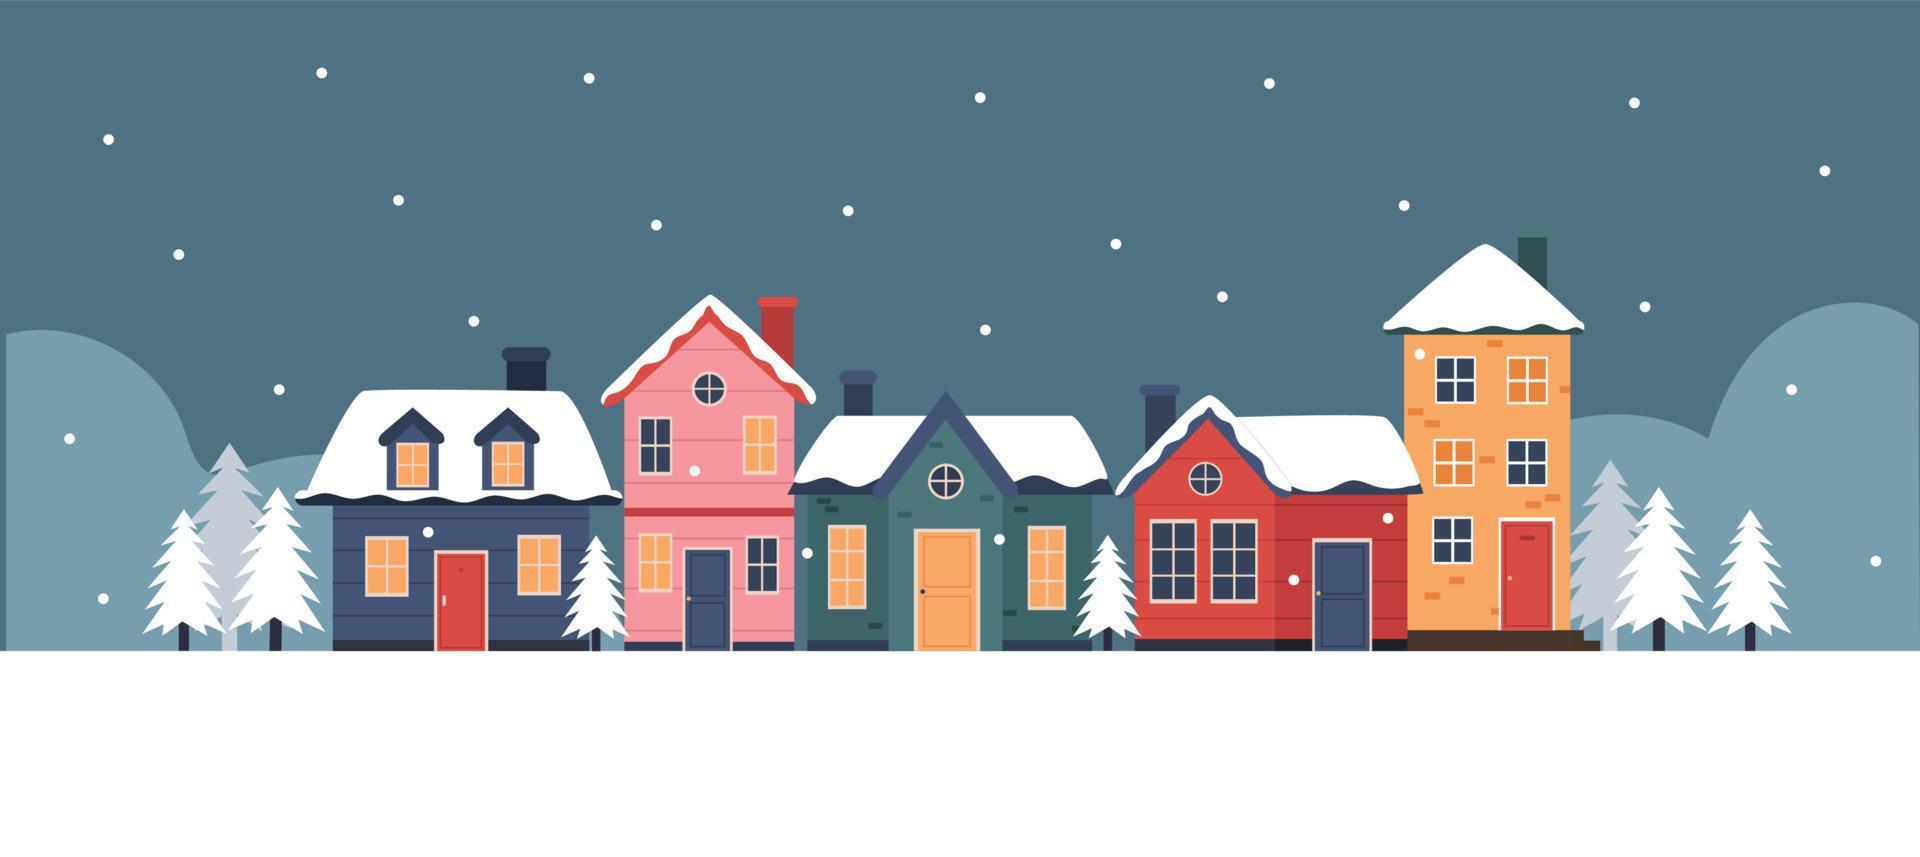 ilustração de bairro nevado da cidade de inverno vetor